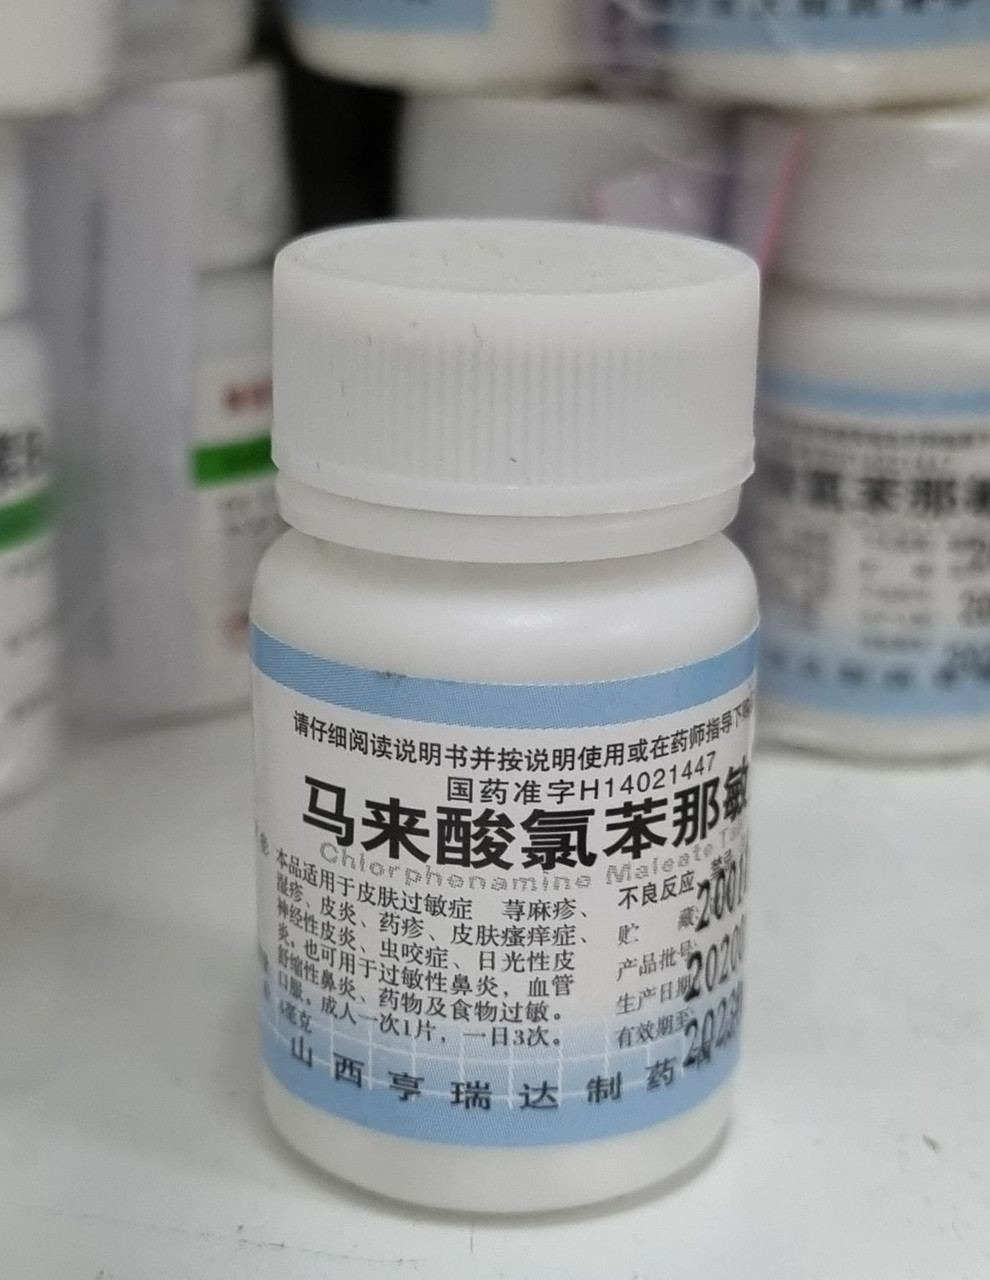 Таблетки от аллергии и для лечения заболевания носа хлорфенамин (или хлорфенирамин) 100 таб.